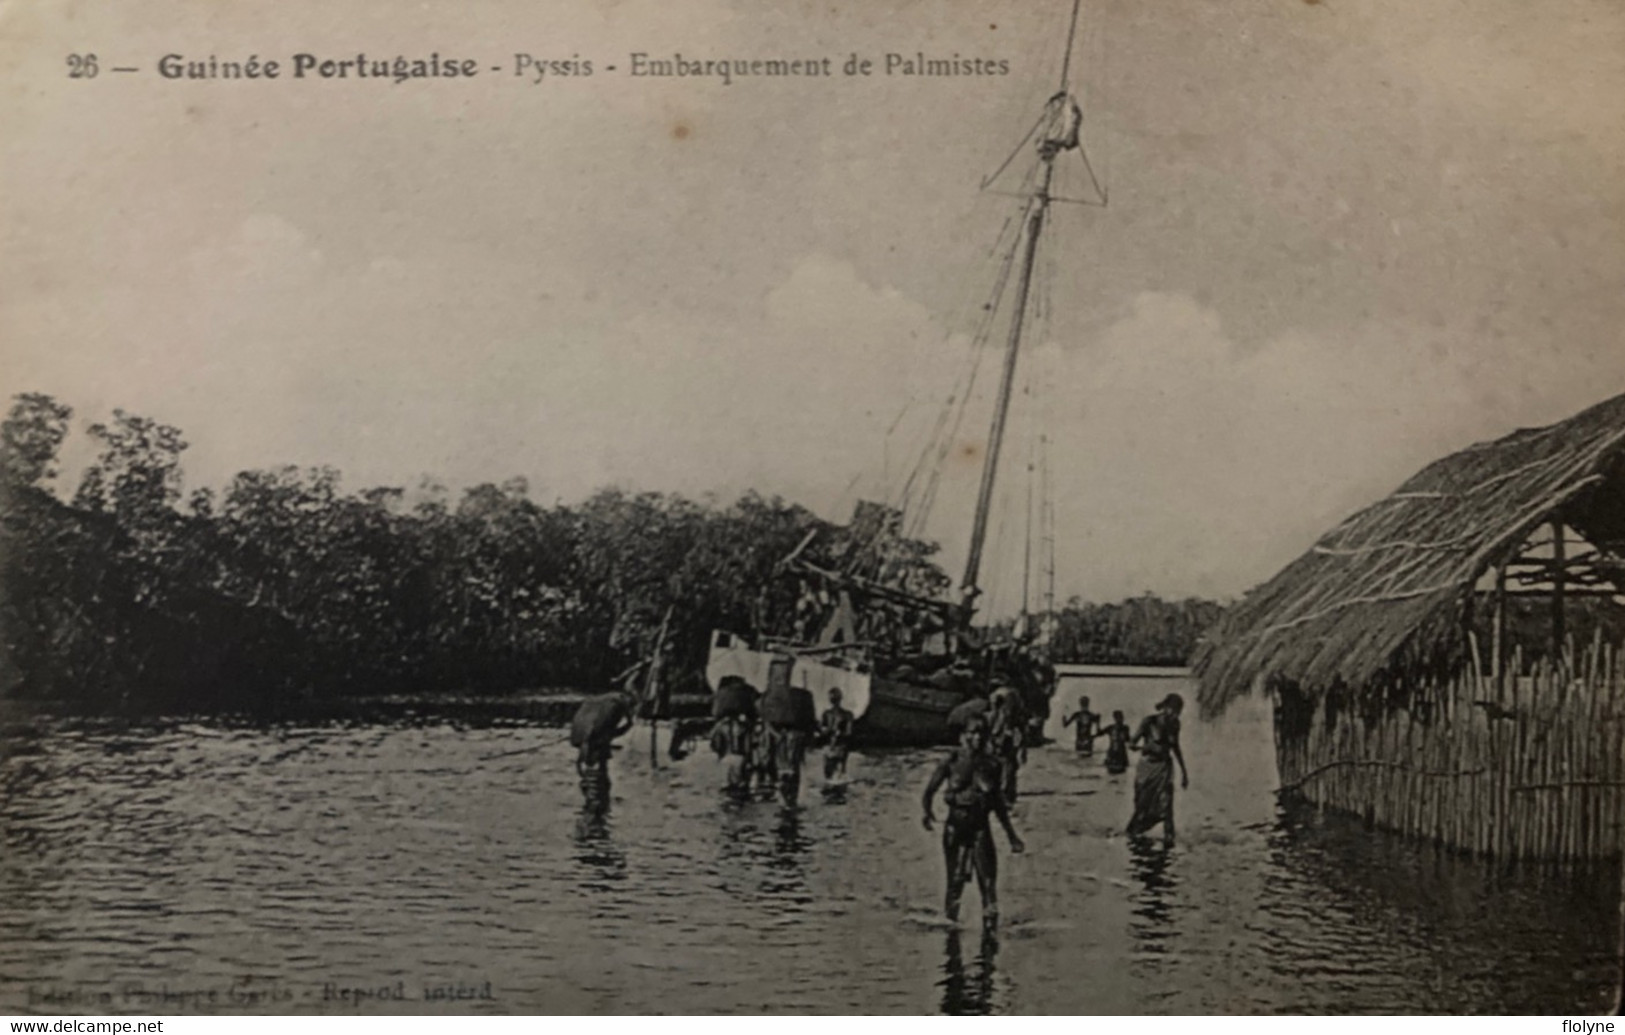 Guinée Portugaise - Pyssis - Embarquement Des Palmistes - Ethnic Ethno Femmes Seins Nus Nue Nude - Guinéa Bissau - Guinea Bissau